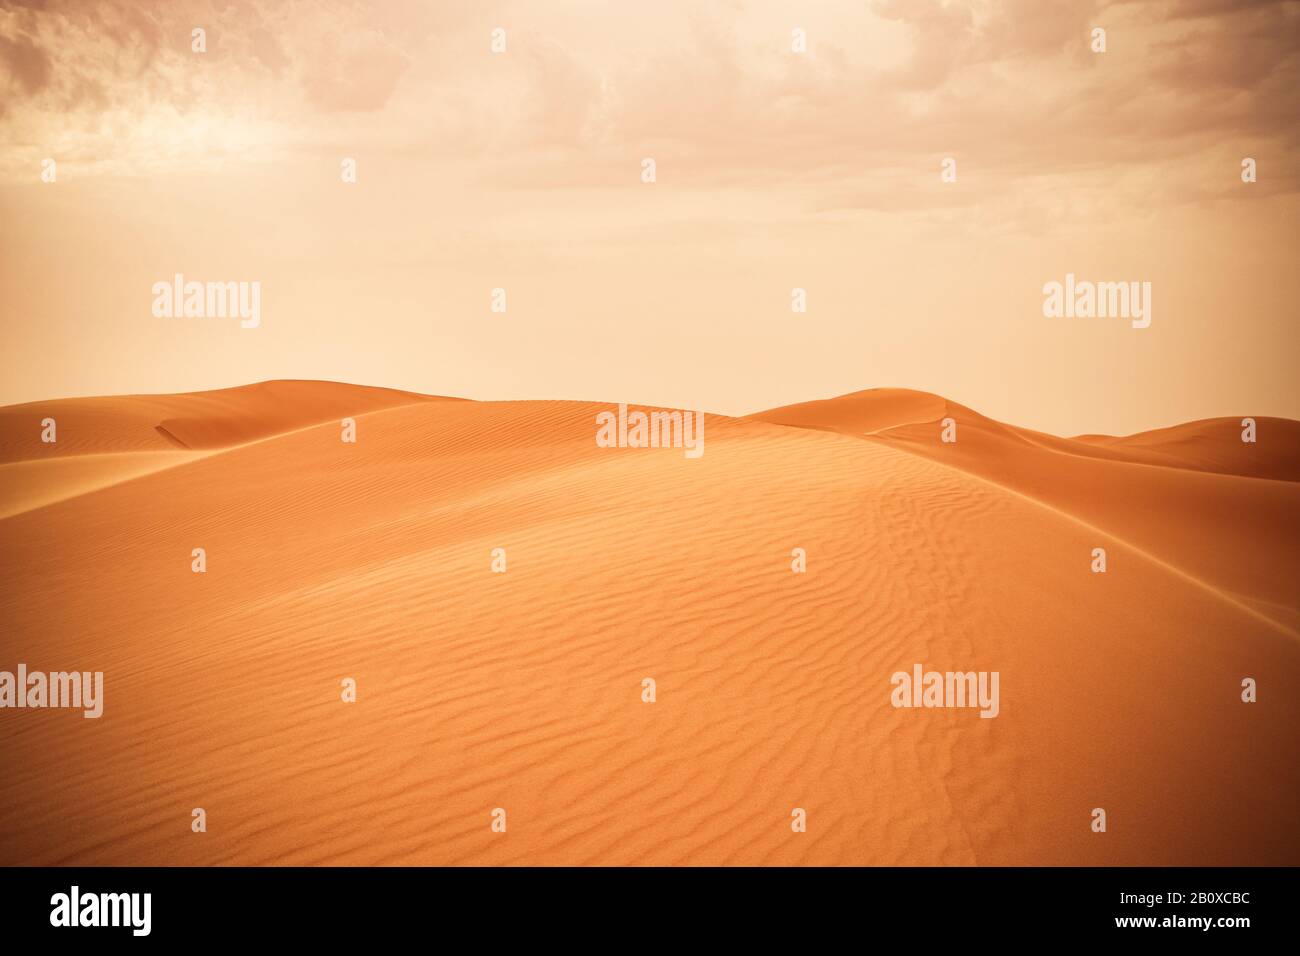 Sanddüne in der saudischen Wüste - schöne arabische Wüste صحراء الخليج العربي - شبه الجزيرة العربية - كثبان رملية - خلفيات Stockfoto